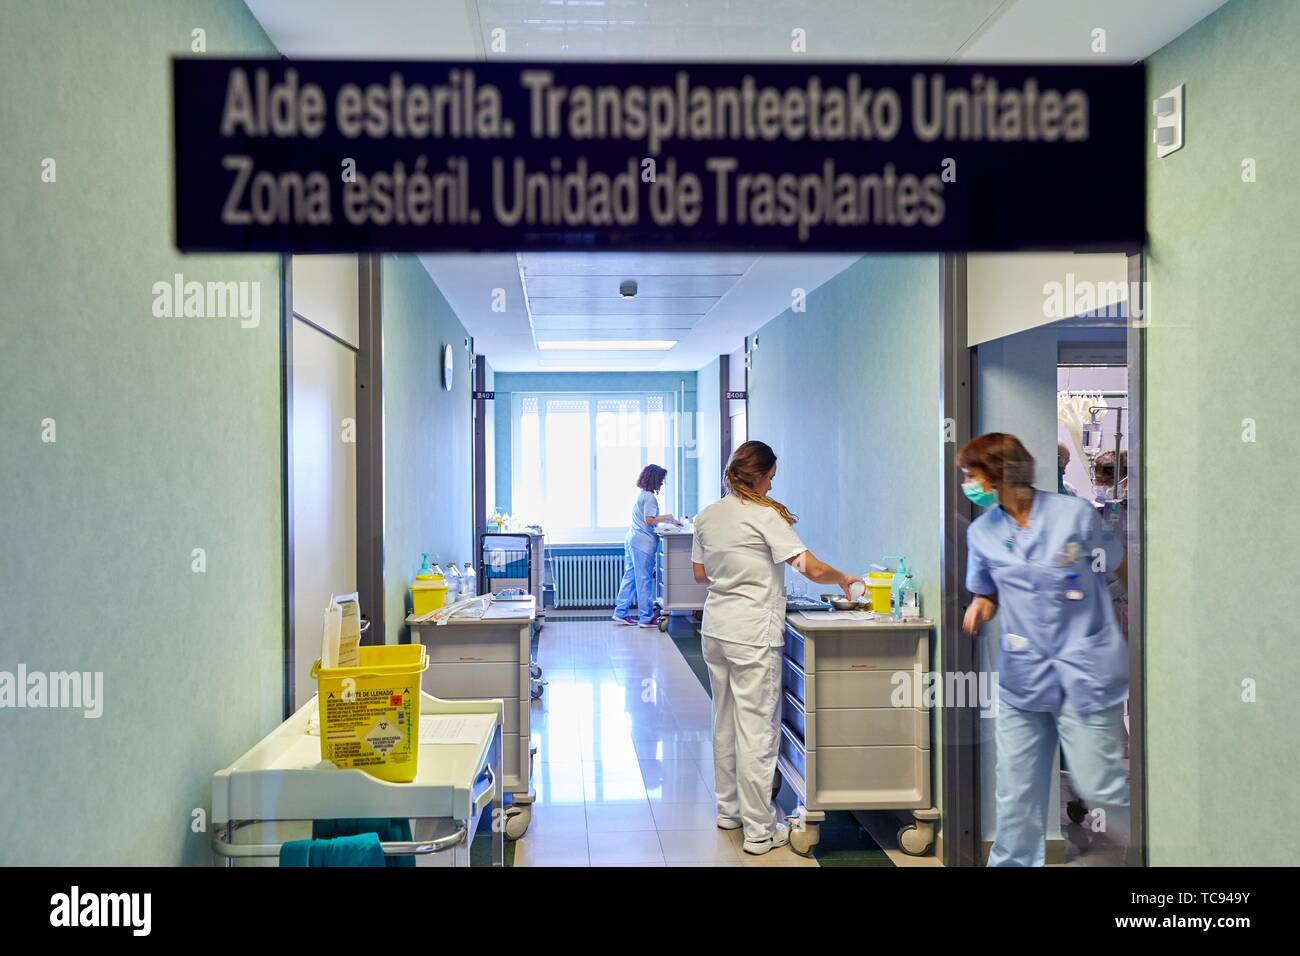 Une zone stérile, l'unité de transplantation, Hématologie, hôpital Donostia, San Sebastian, Gipuzkoa, Pays Basque, Espagne Banque D'Images